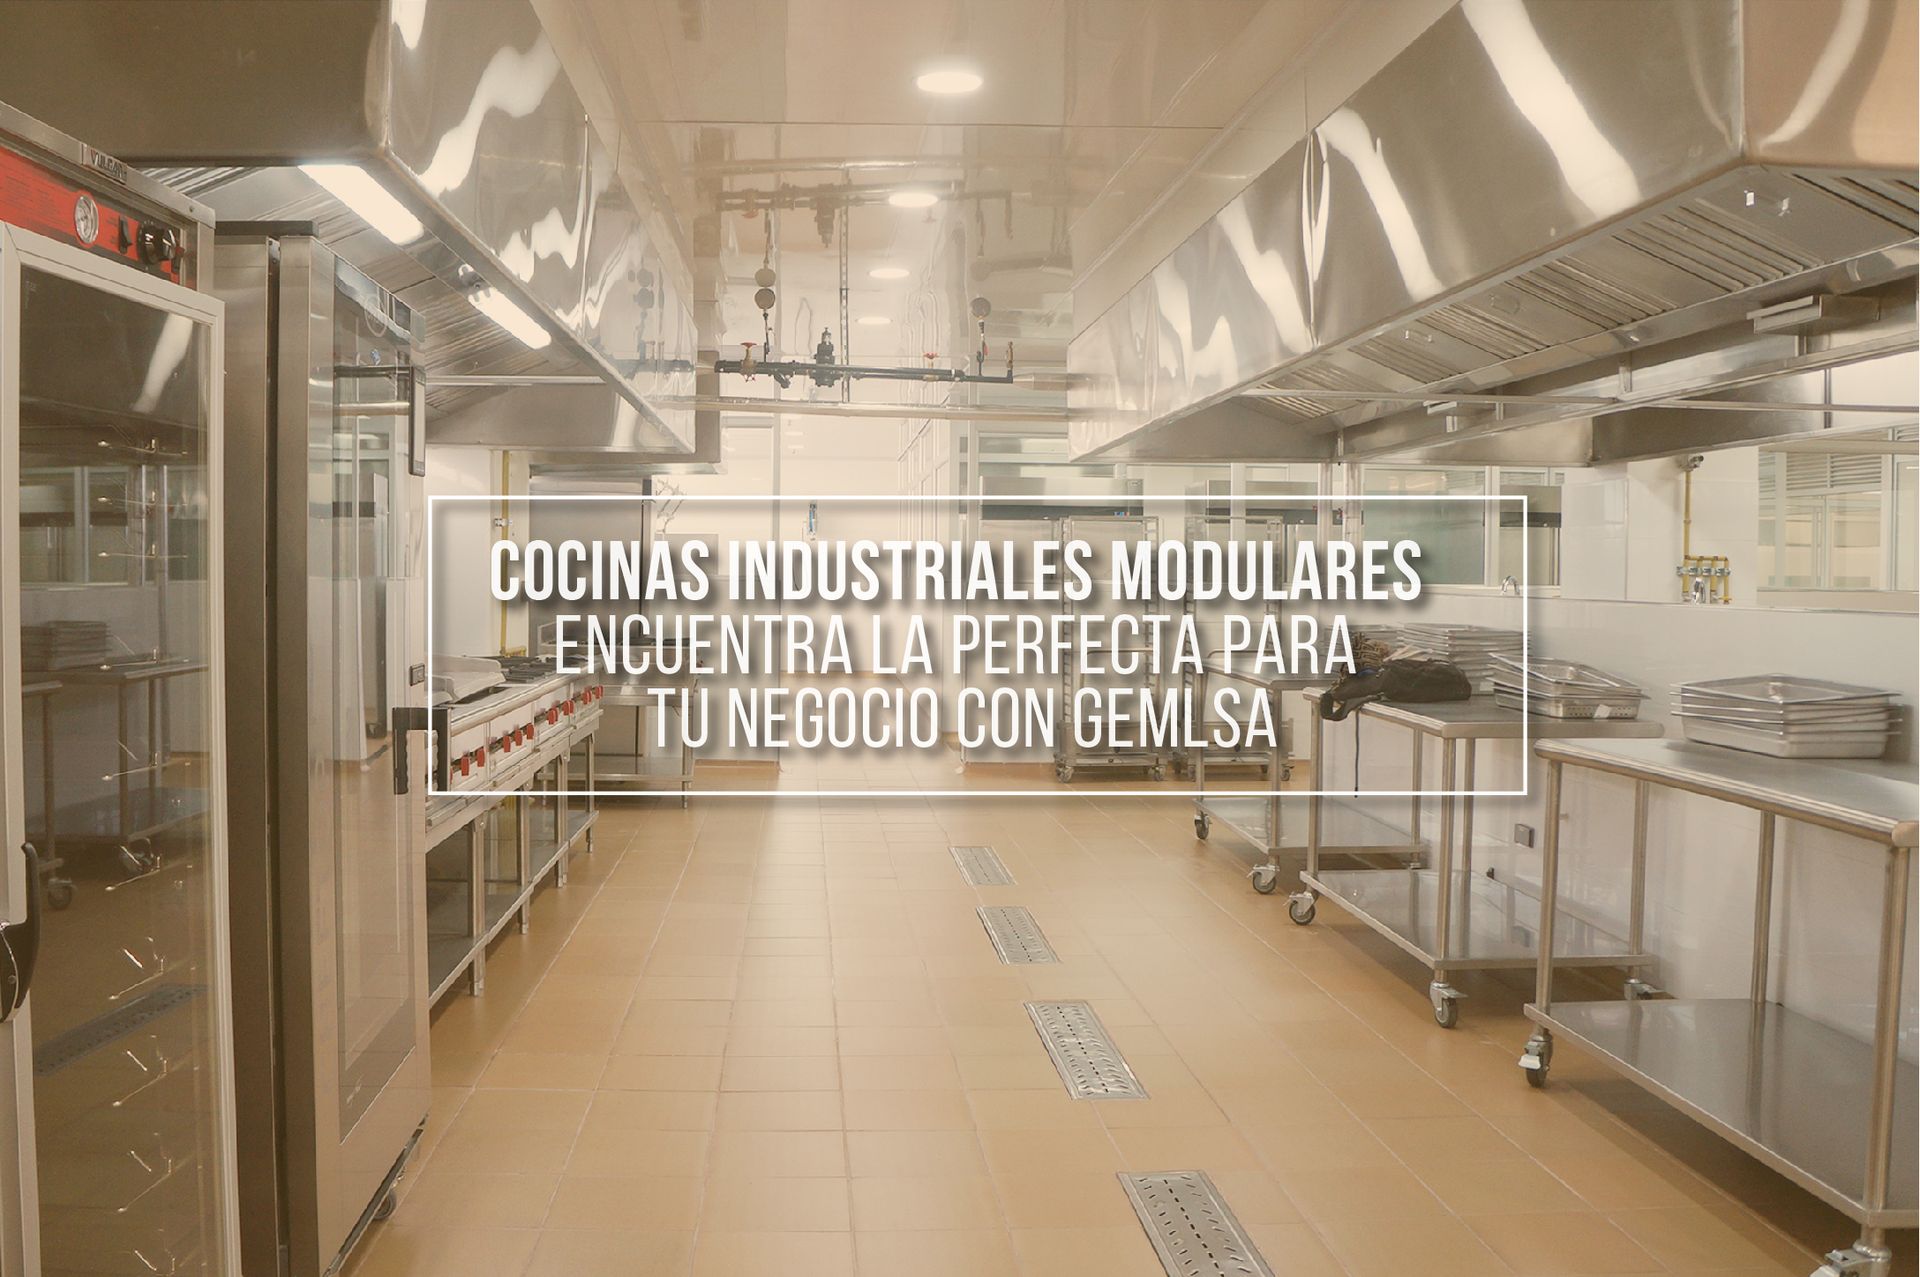 Cocinas industriales modulares